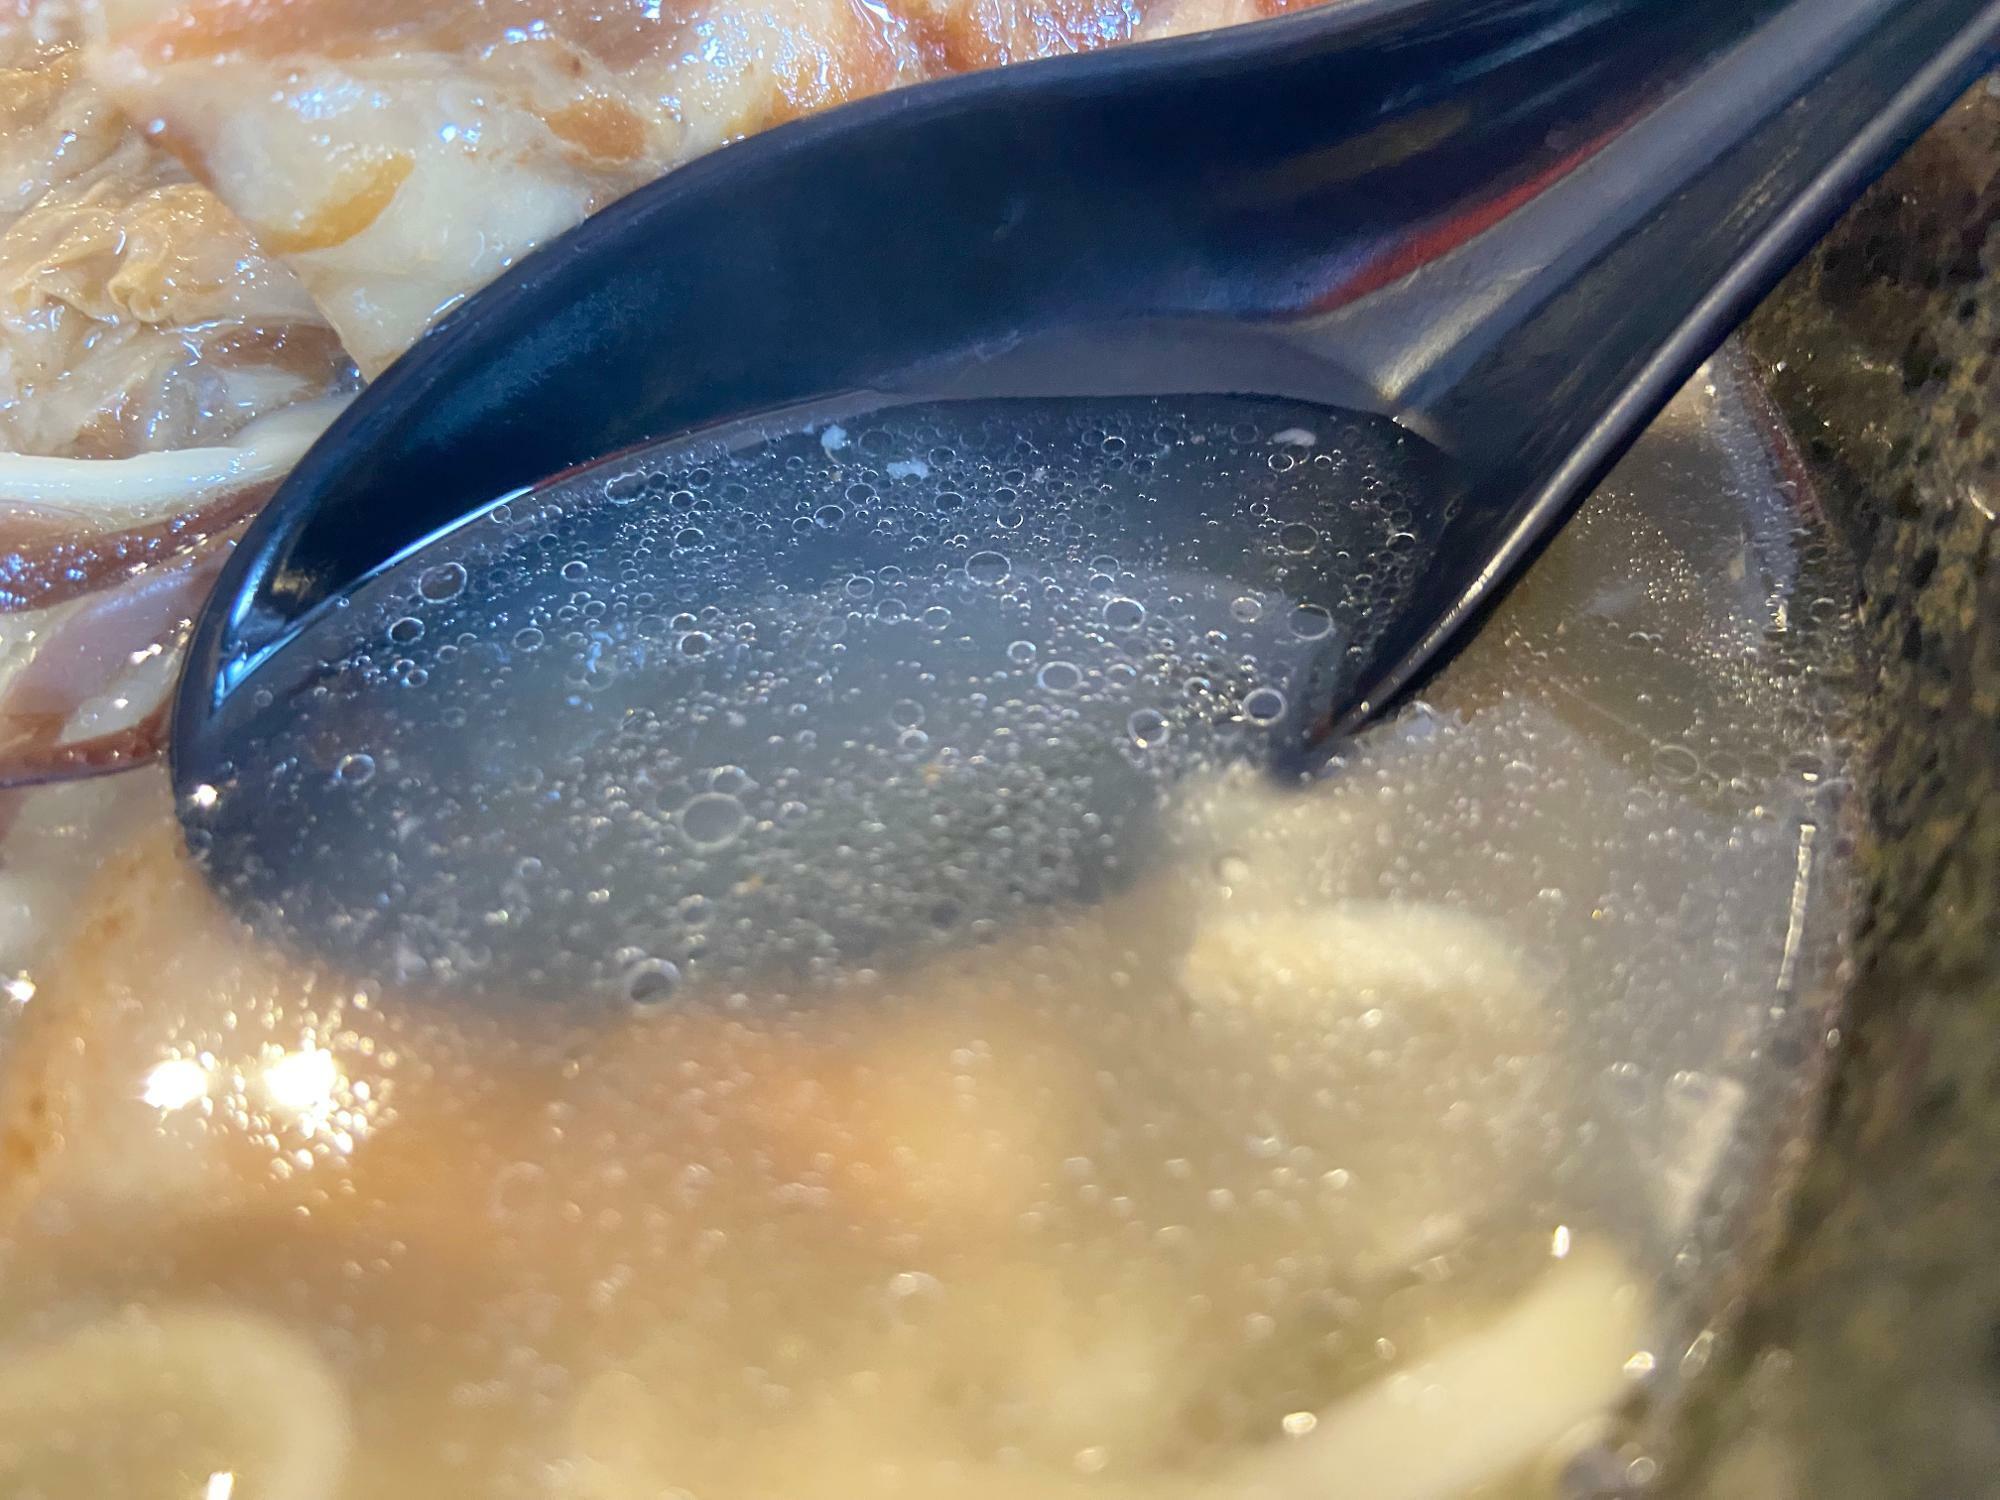 スープはもちろん最後の1滴まで。